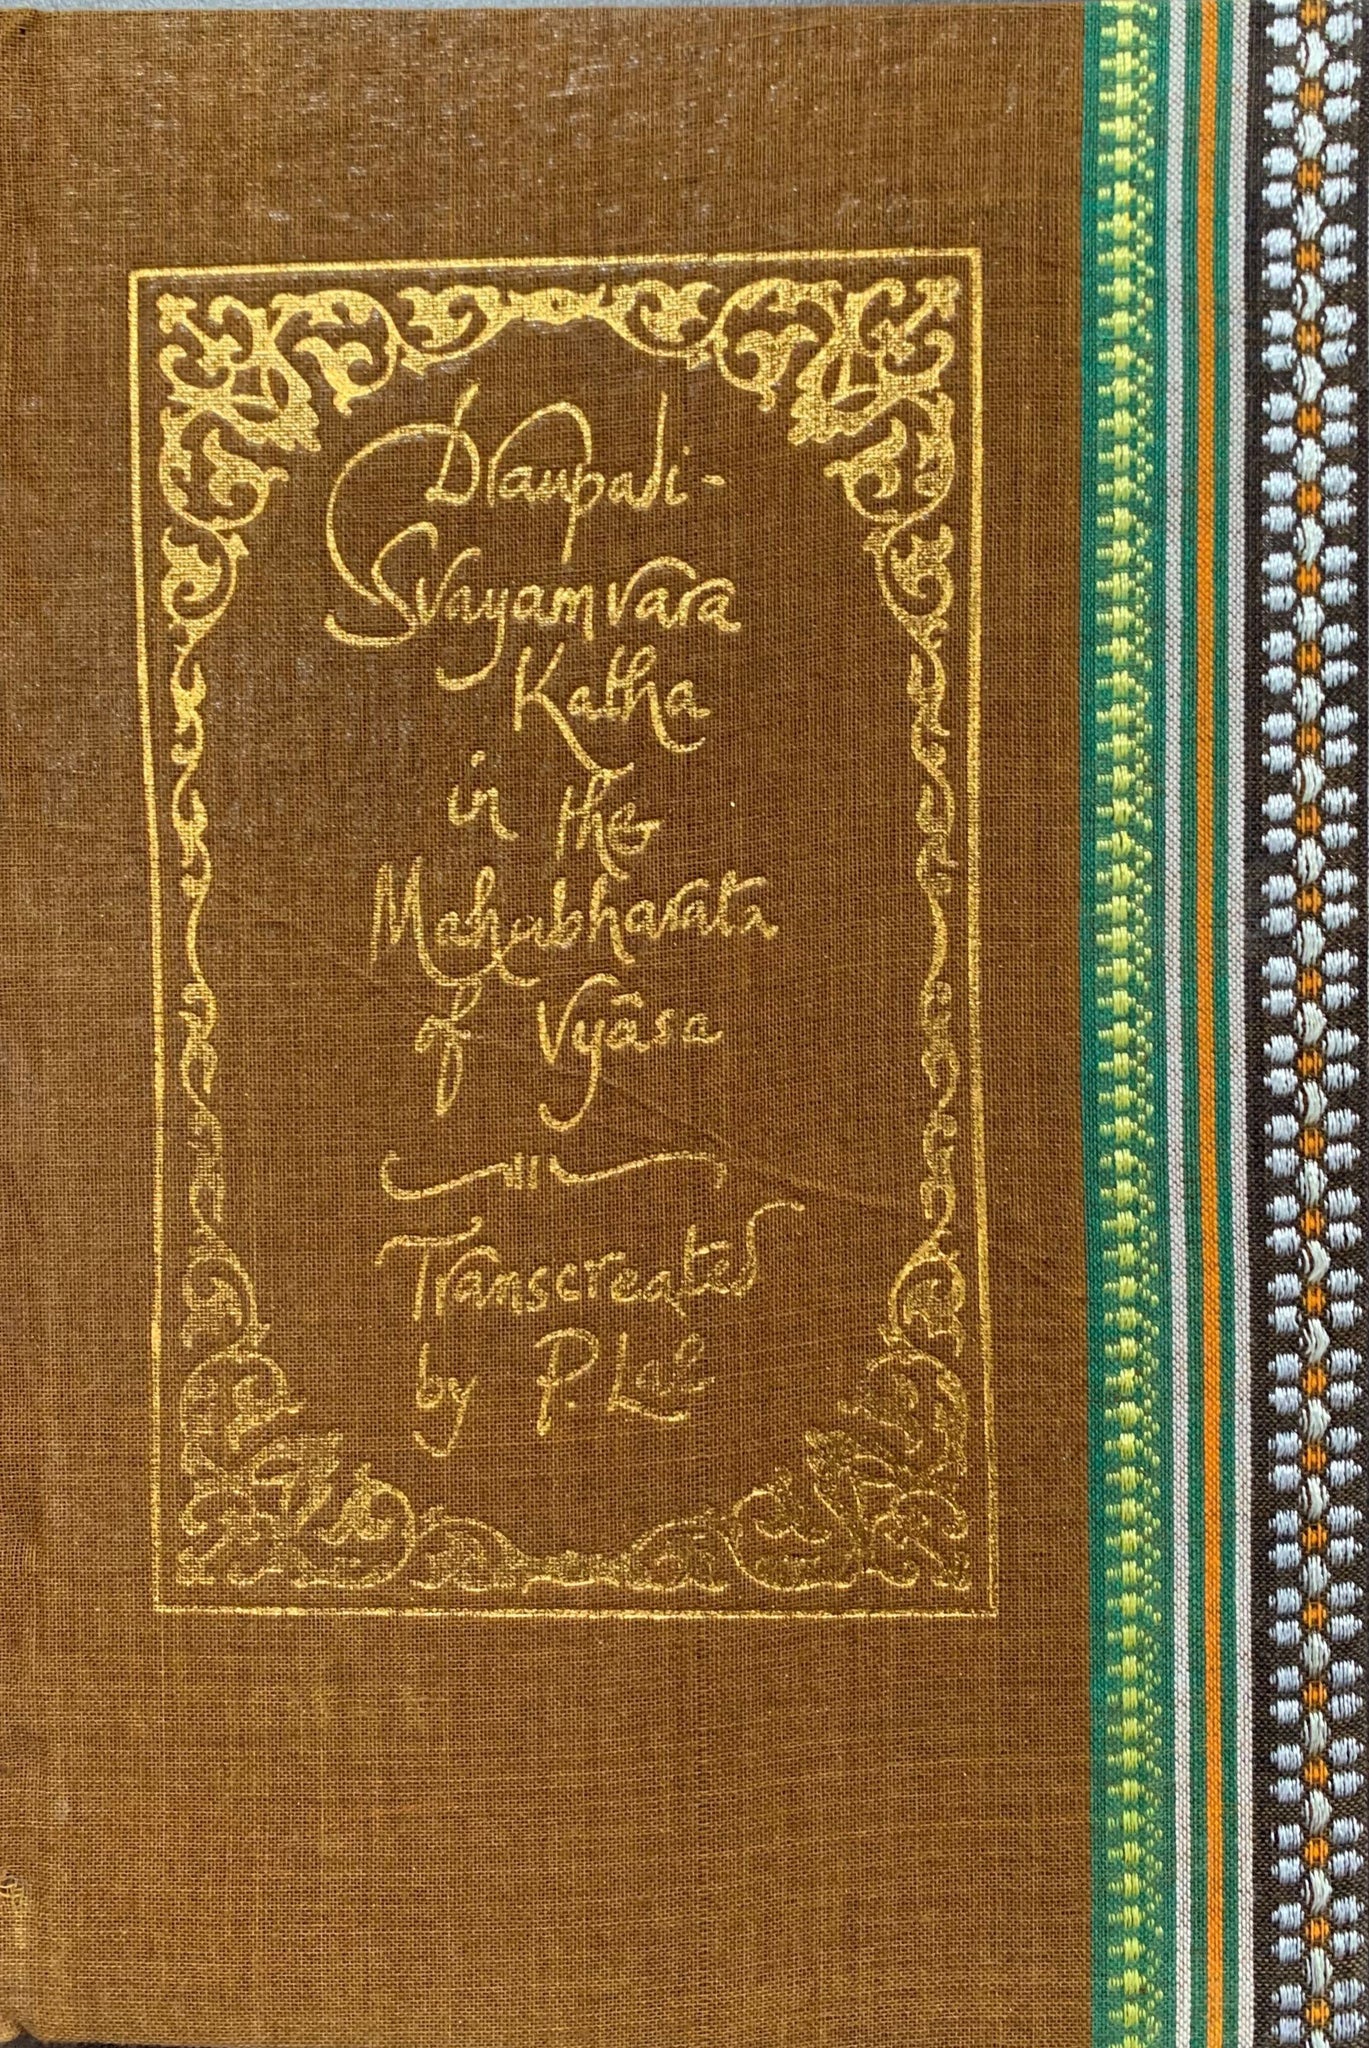 Draupadi Svayamvara Katha In The Mahabharata Of Vyasa